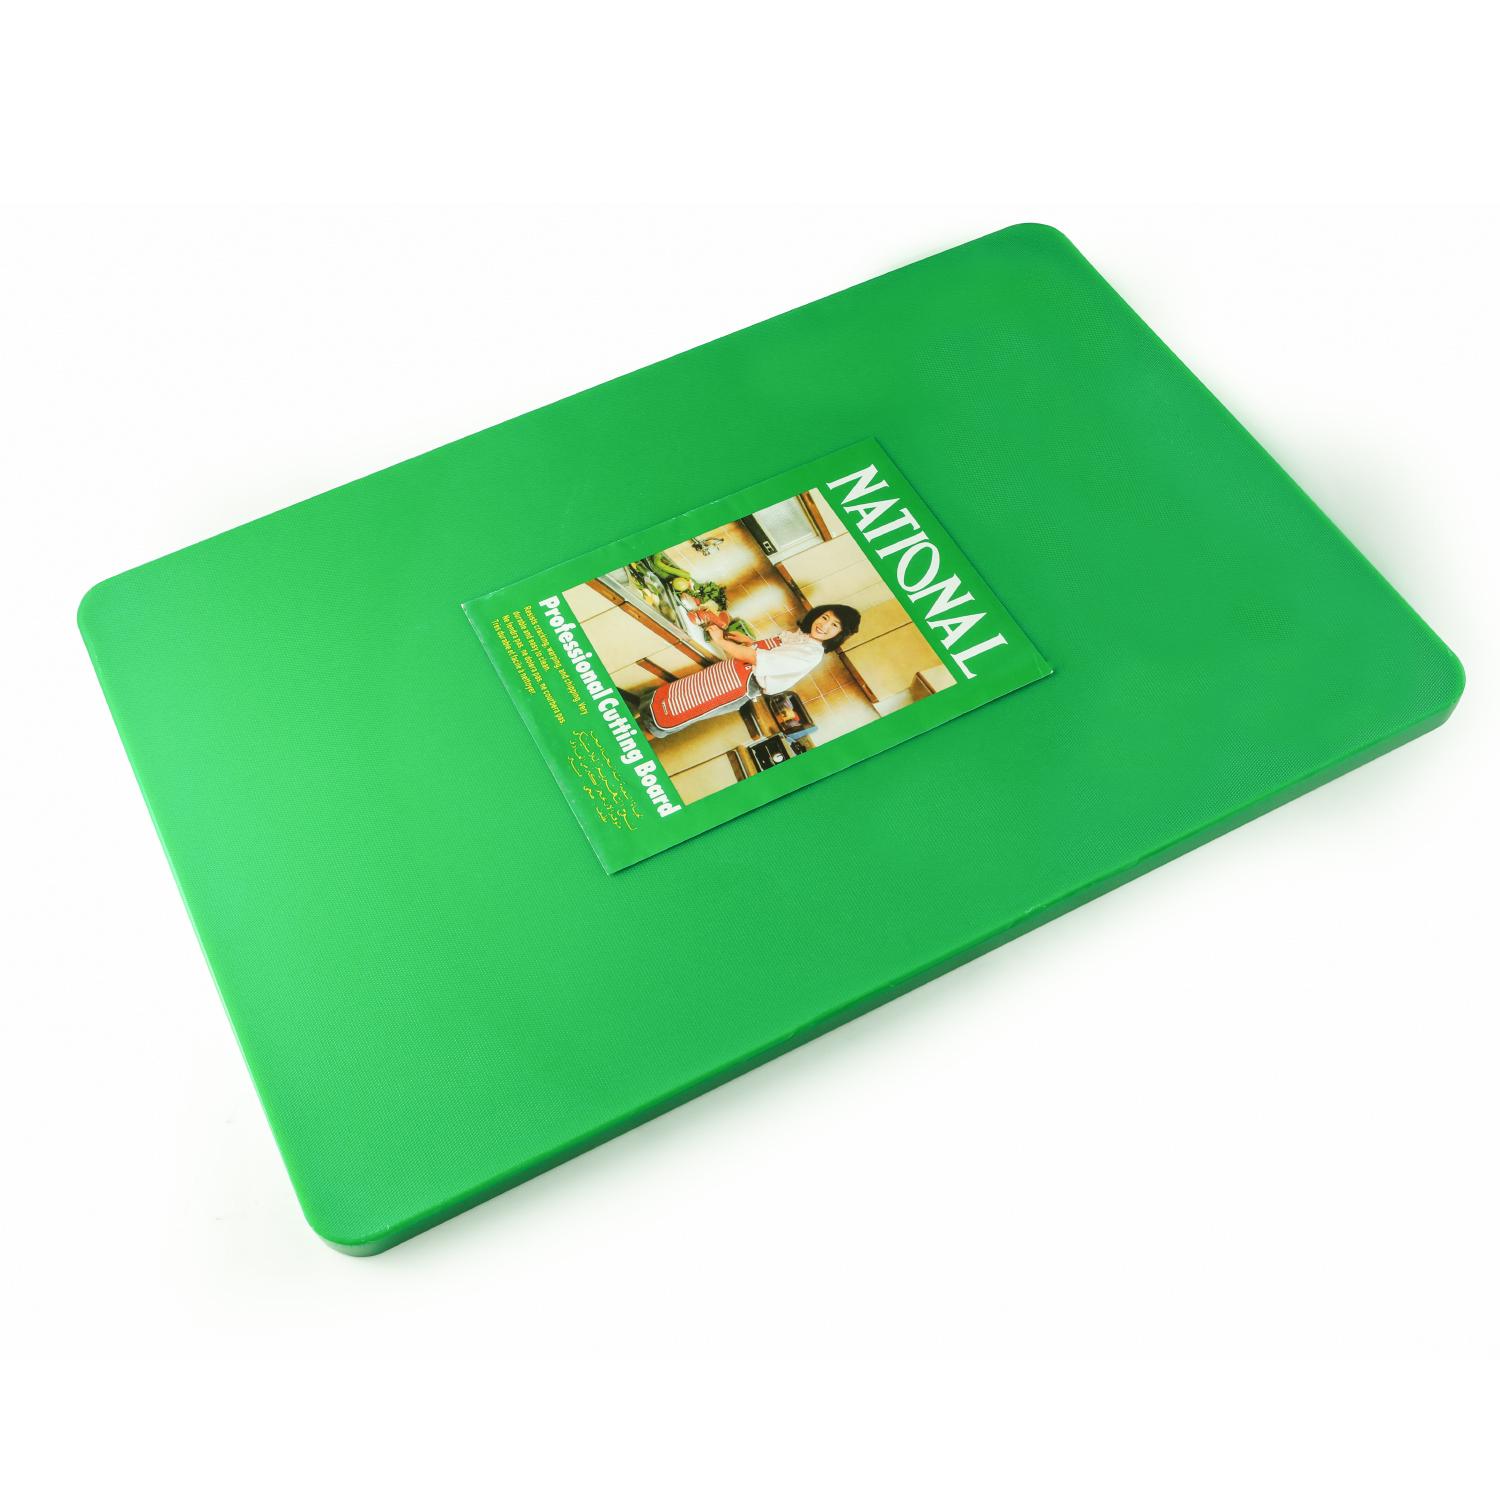 لوح تقطيع كبير بلاستيك 60 سم أخضر ناشيونال National PE Cutting Board 60 cm